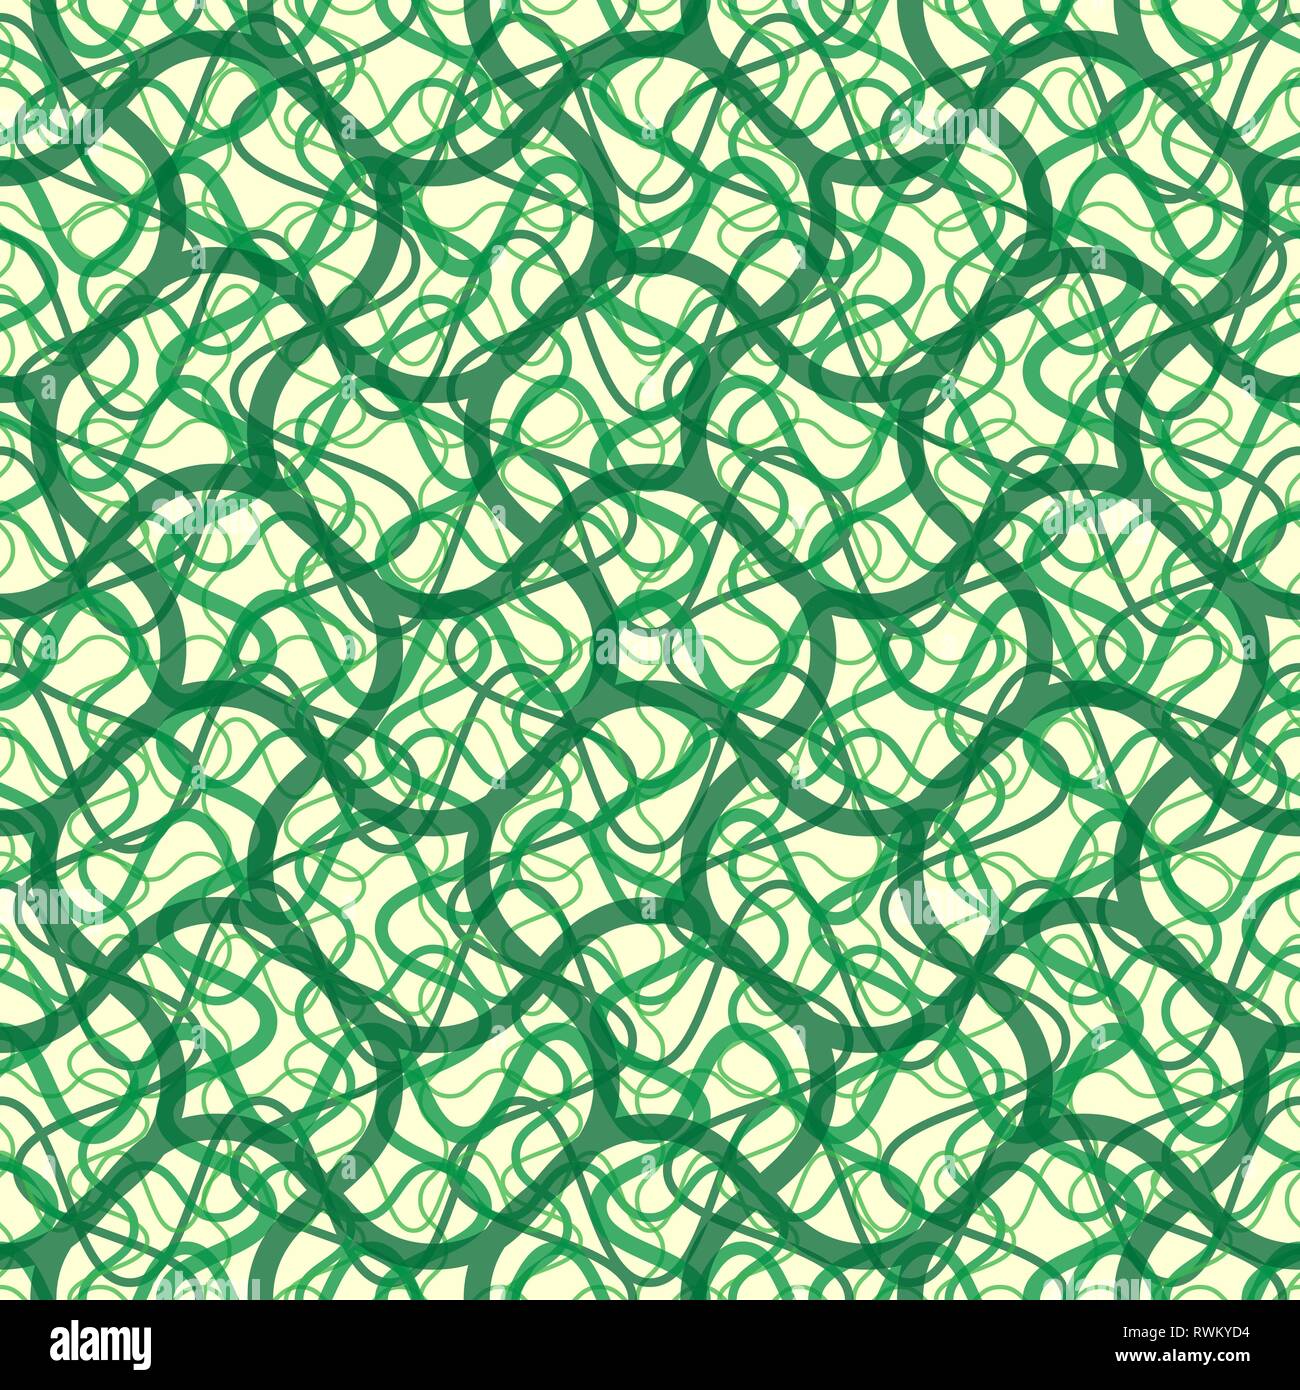 Vigne de lierre dans un vecteur papier peint seamless pattern, des lignes courbes background Illustration de Vecteur